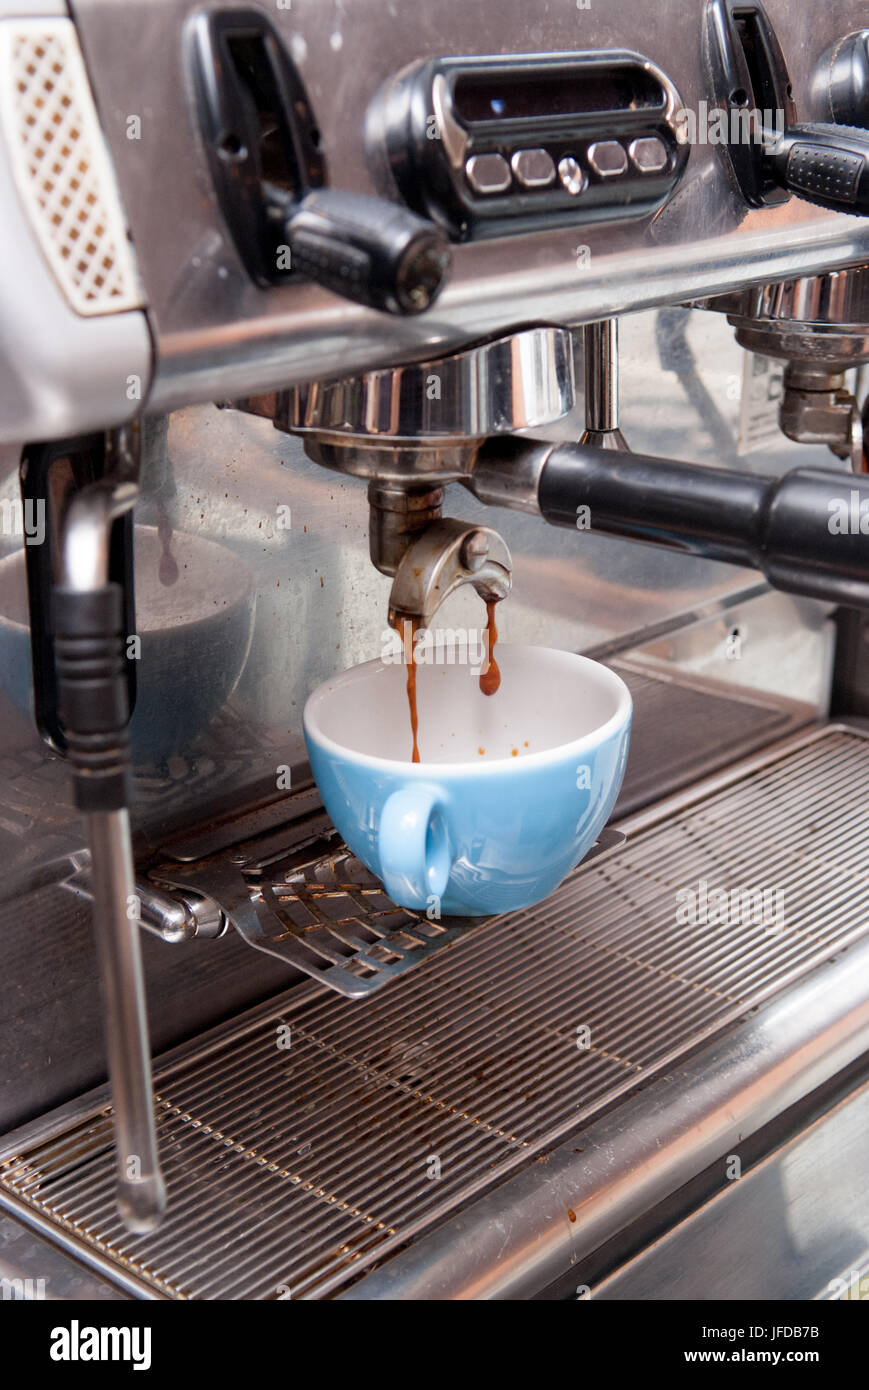 máquinas de espresso, máquinas de café barista para el hogar, cafetera  espresso de acero inoxidable, cafetera automática con molinillo,  expresiones